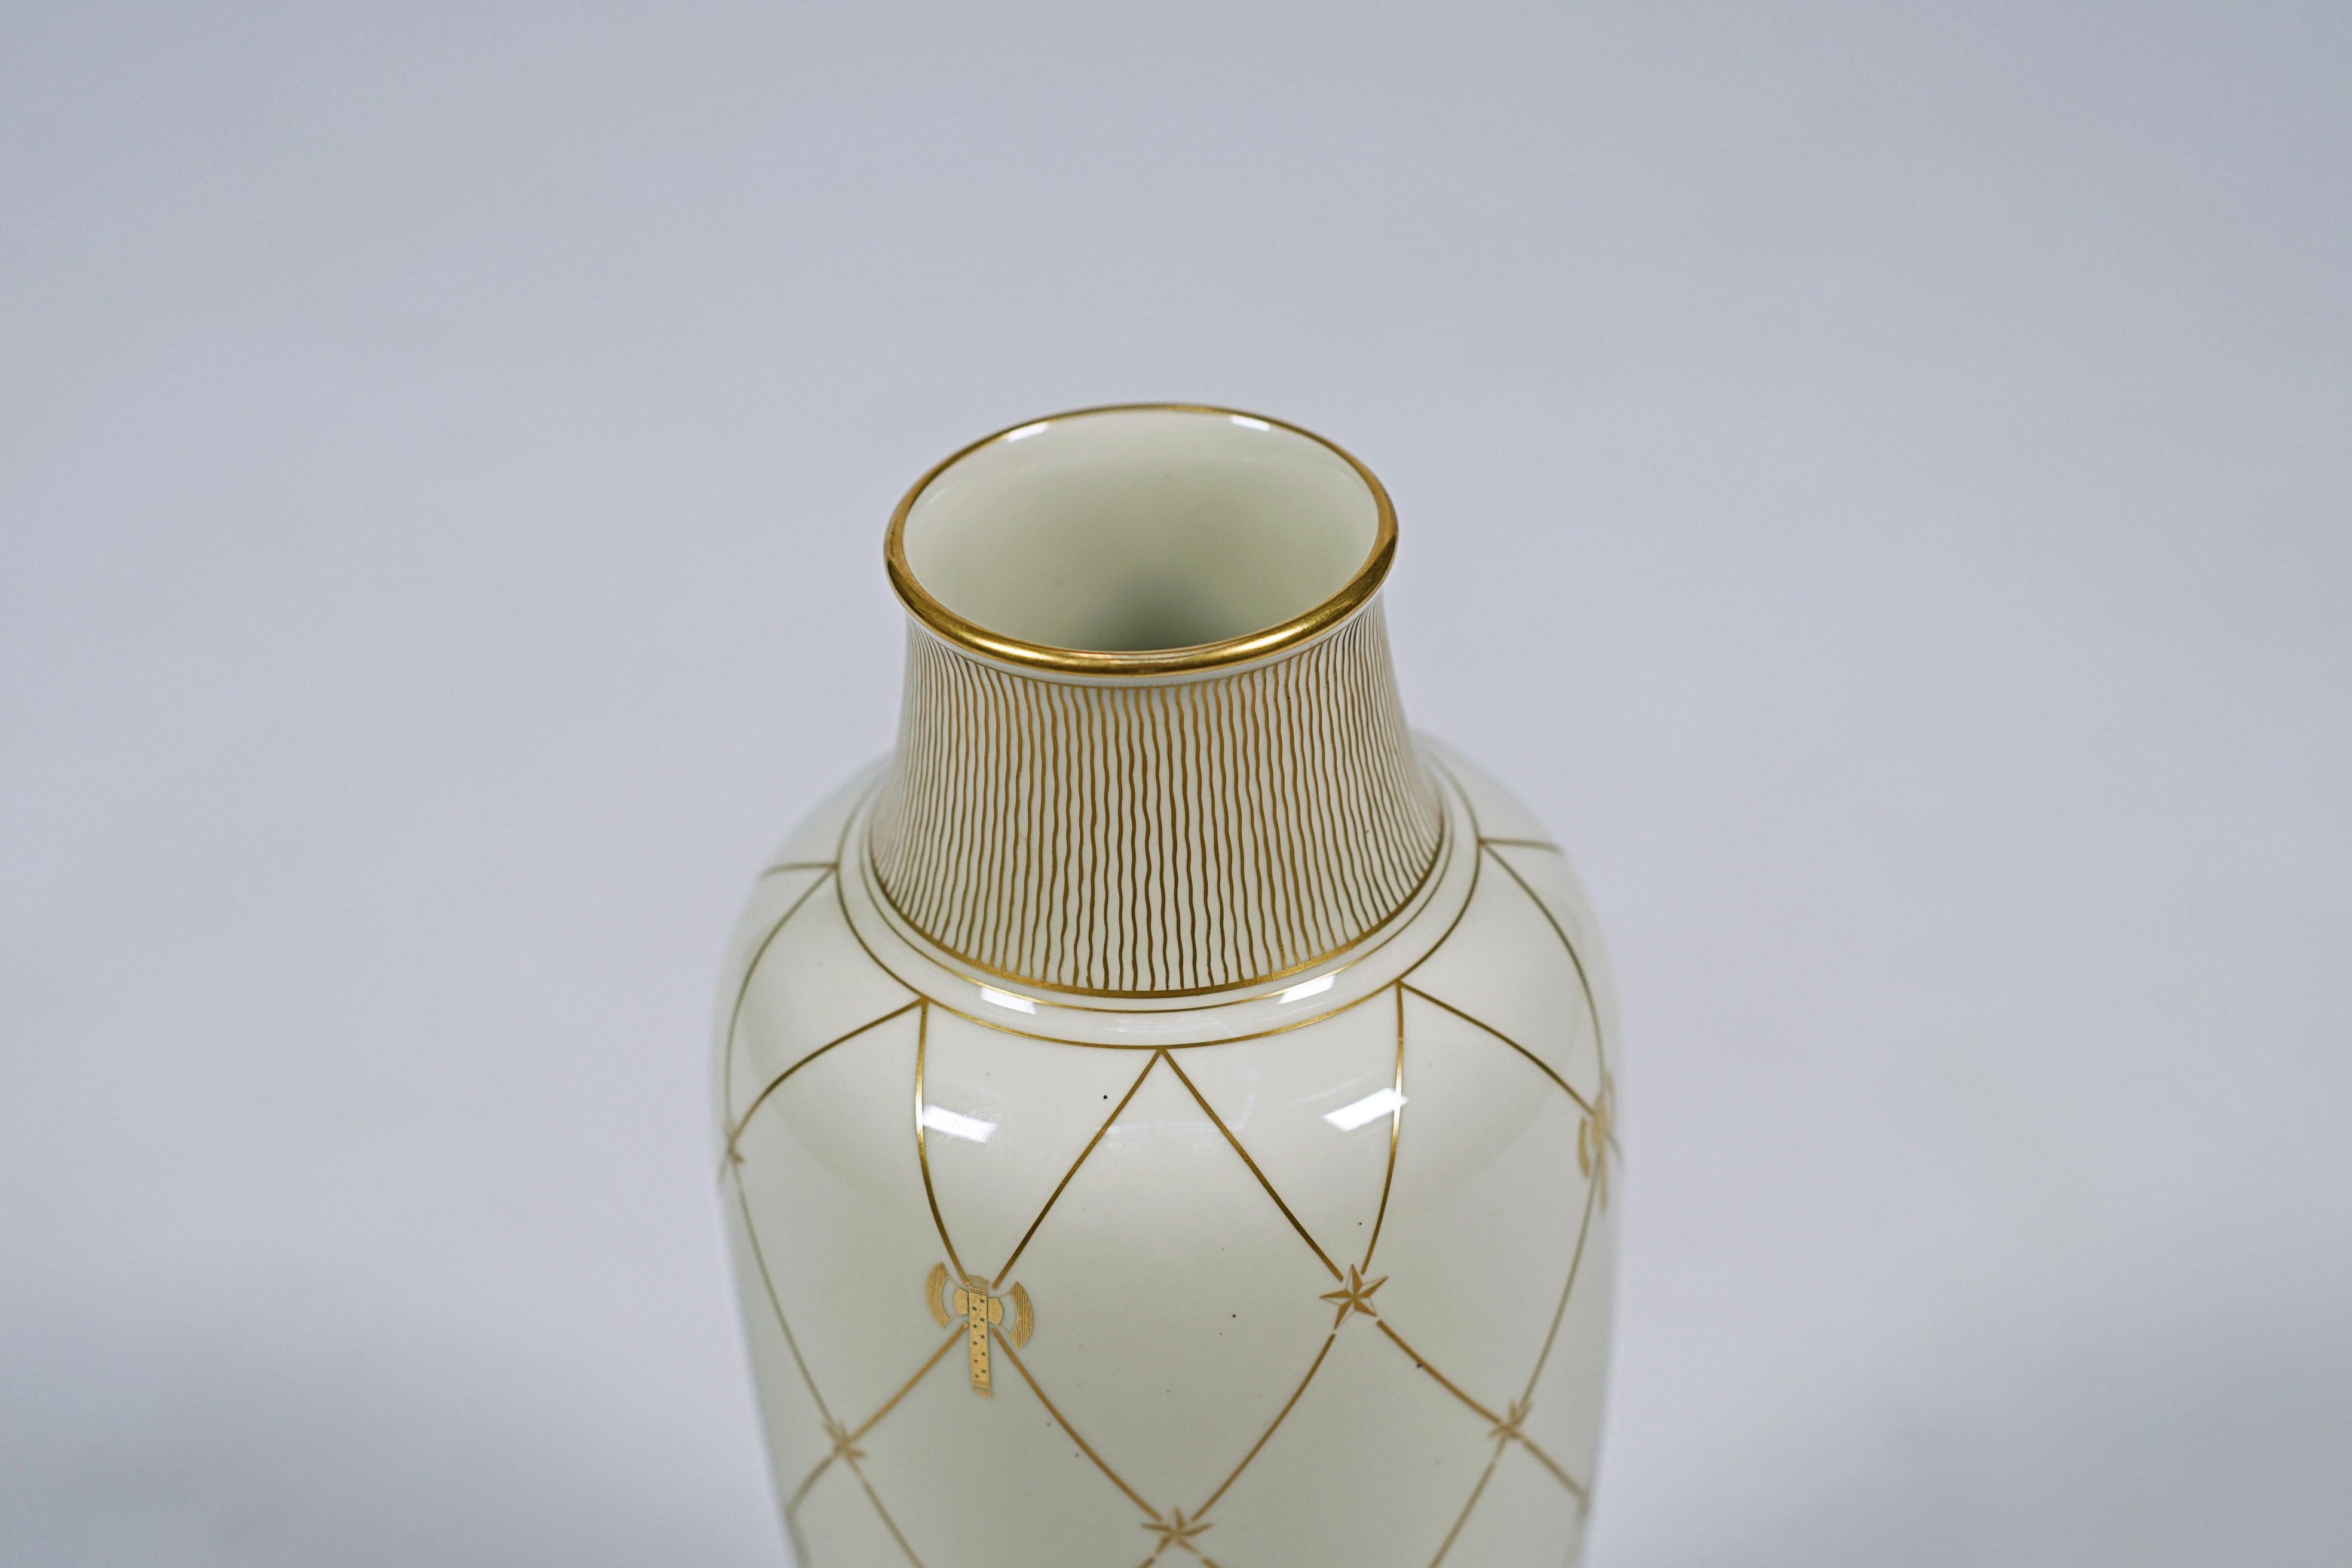 Porzellanvase im Art déco-Stil aus Sèvres. Die Vase zeigt eine 